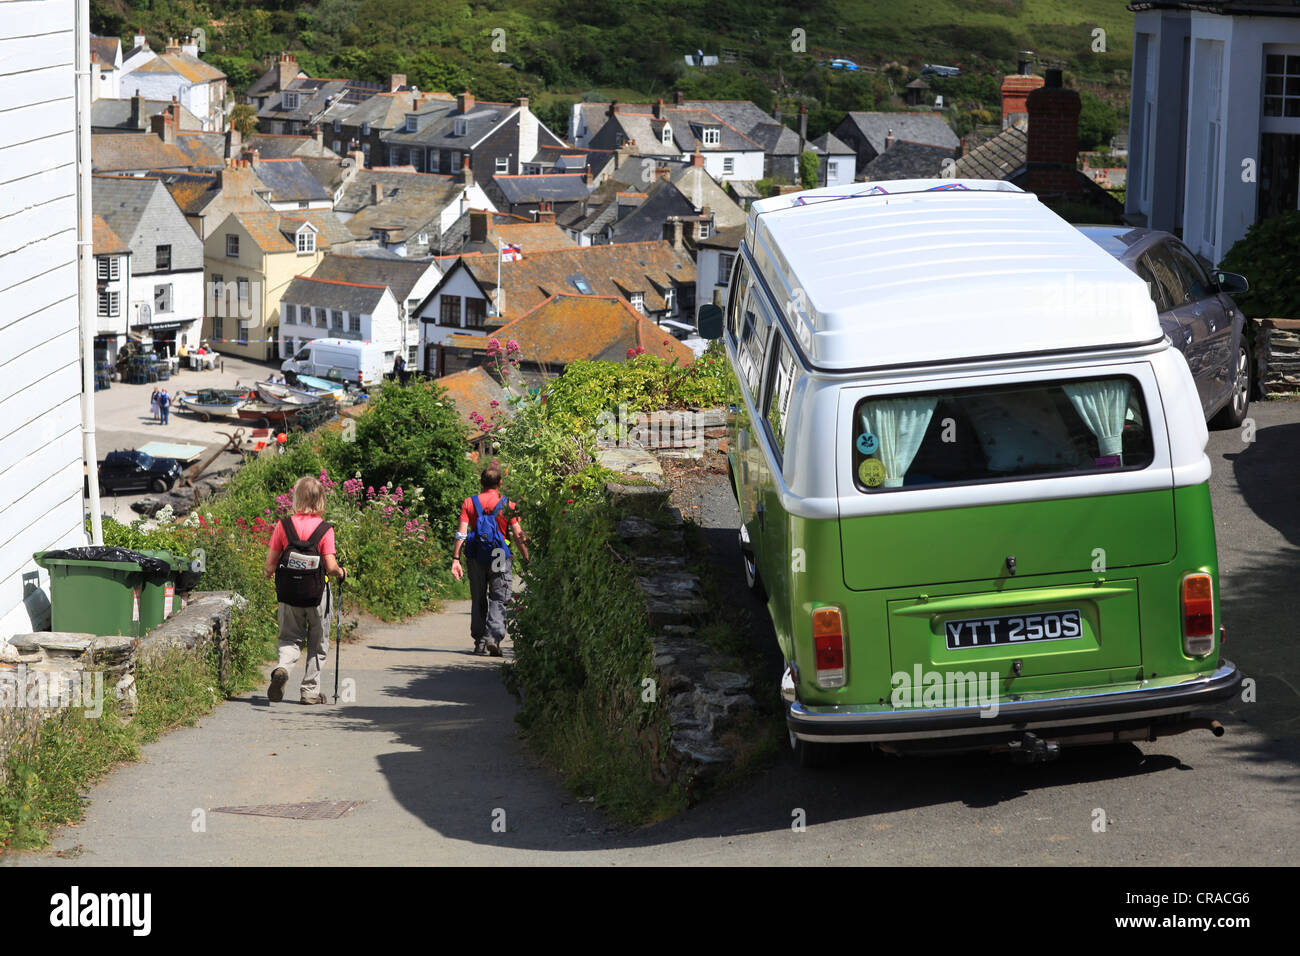 Port Isaac, North Cornwall, un VW camper van stationné sur une rue étroite avec les randonneurs et les promeneurs en direction de la ville de la baie en bord de mer Banque D'Images